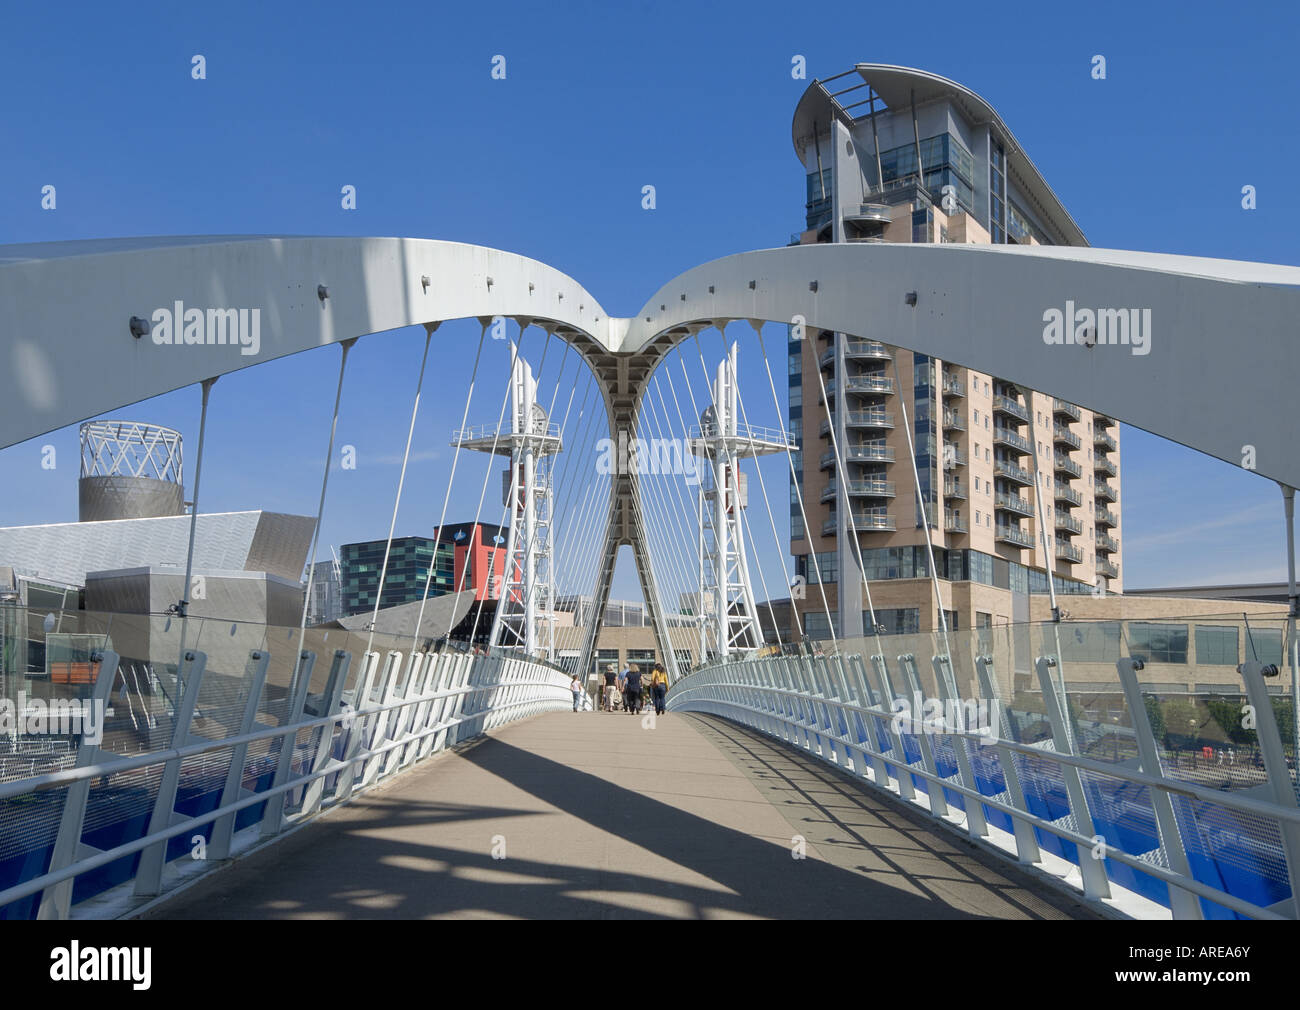 England, Manchester, Salford Quays, Millennium Bridge, moderne britische Architektur mit dem Lowry Centre in der Ferne Stockfoto